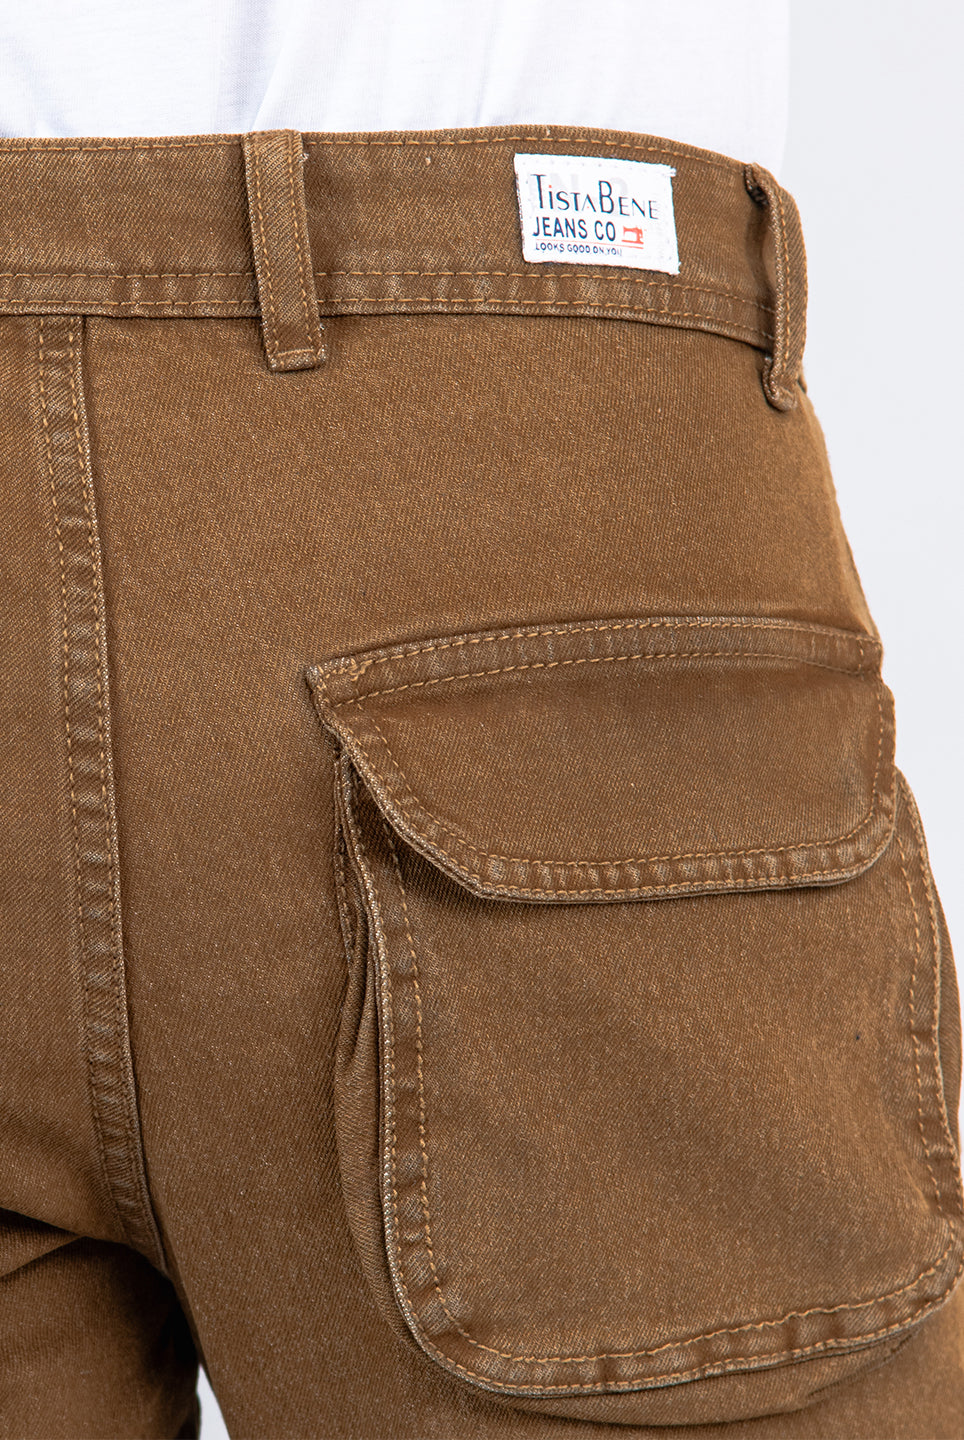 brown cargo denim jeans